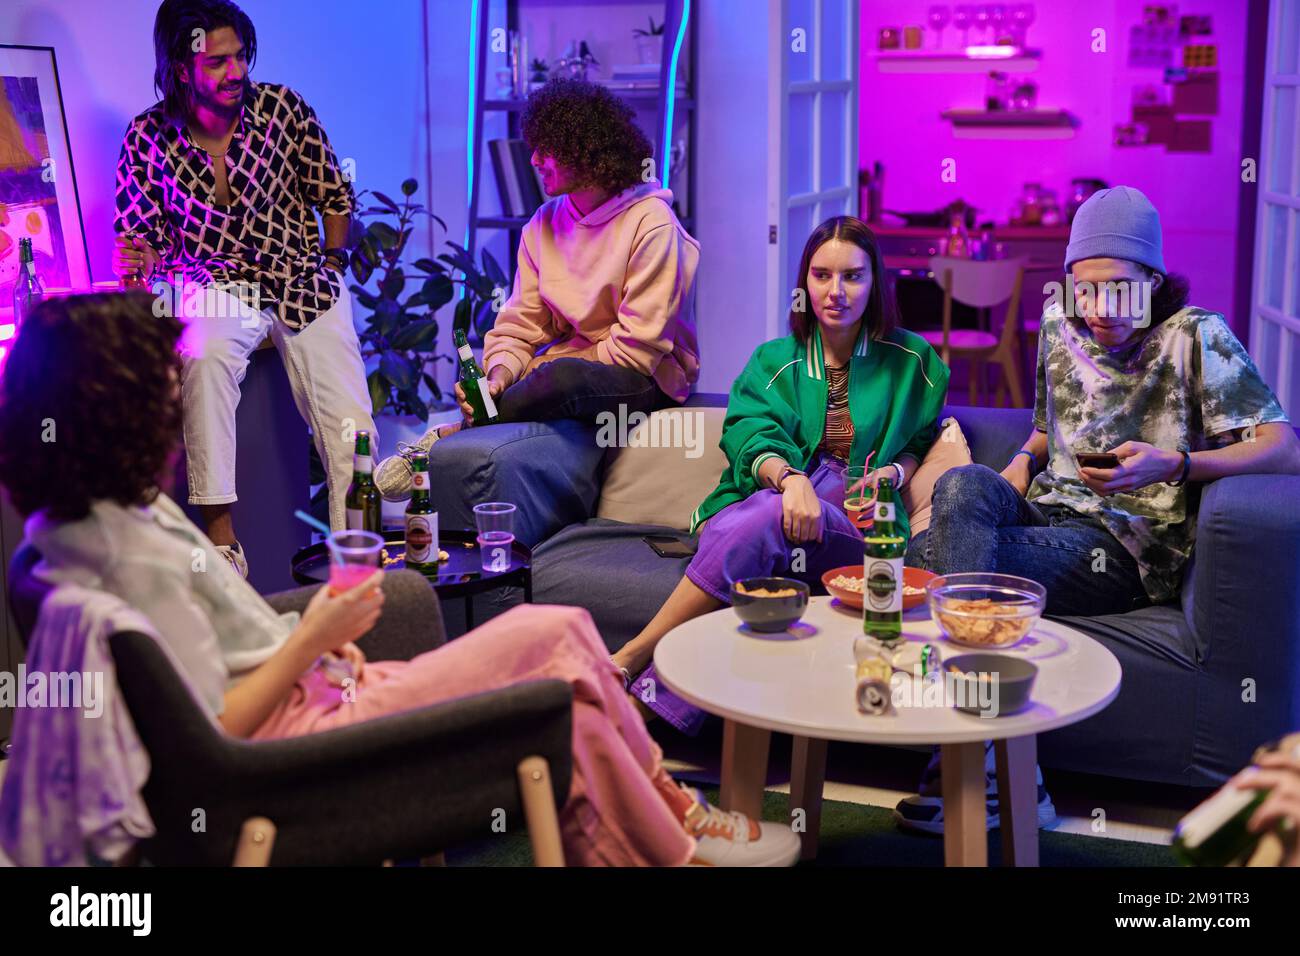 Grupo de amigos jóvenes en ropa casual tomando bebidas mientras se relaja en la sala de estar iluminada por luz de neón y disfrutando de la fiesta en casa Foto de stock